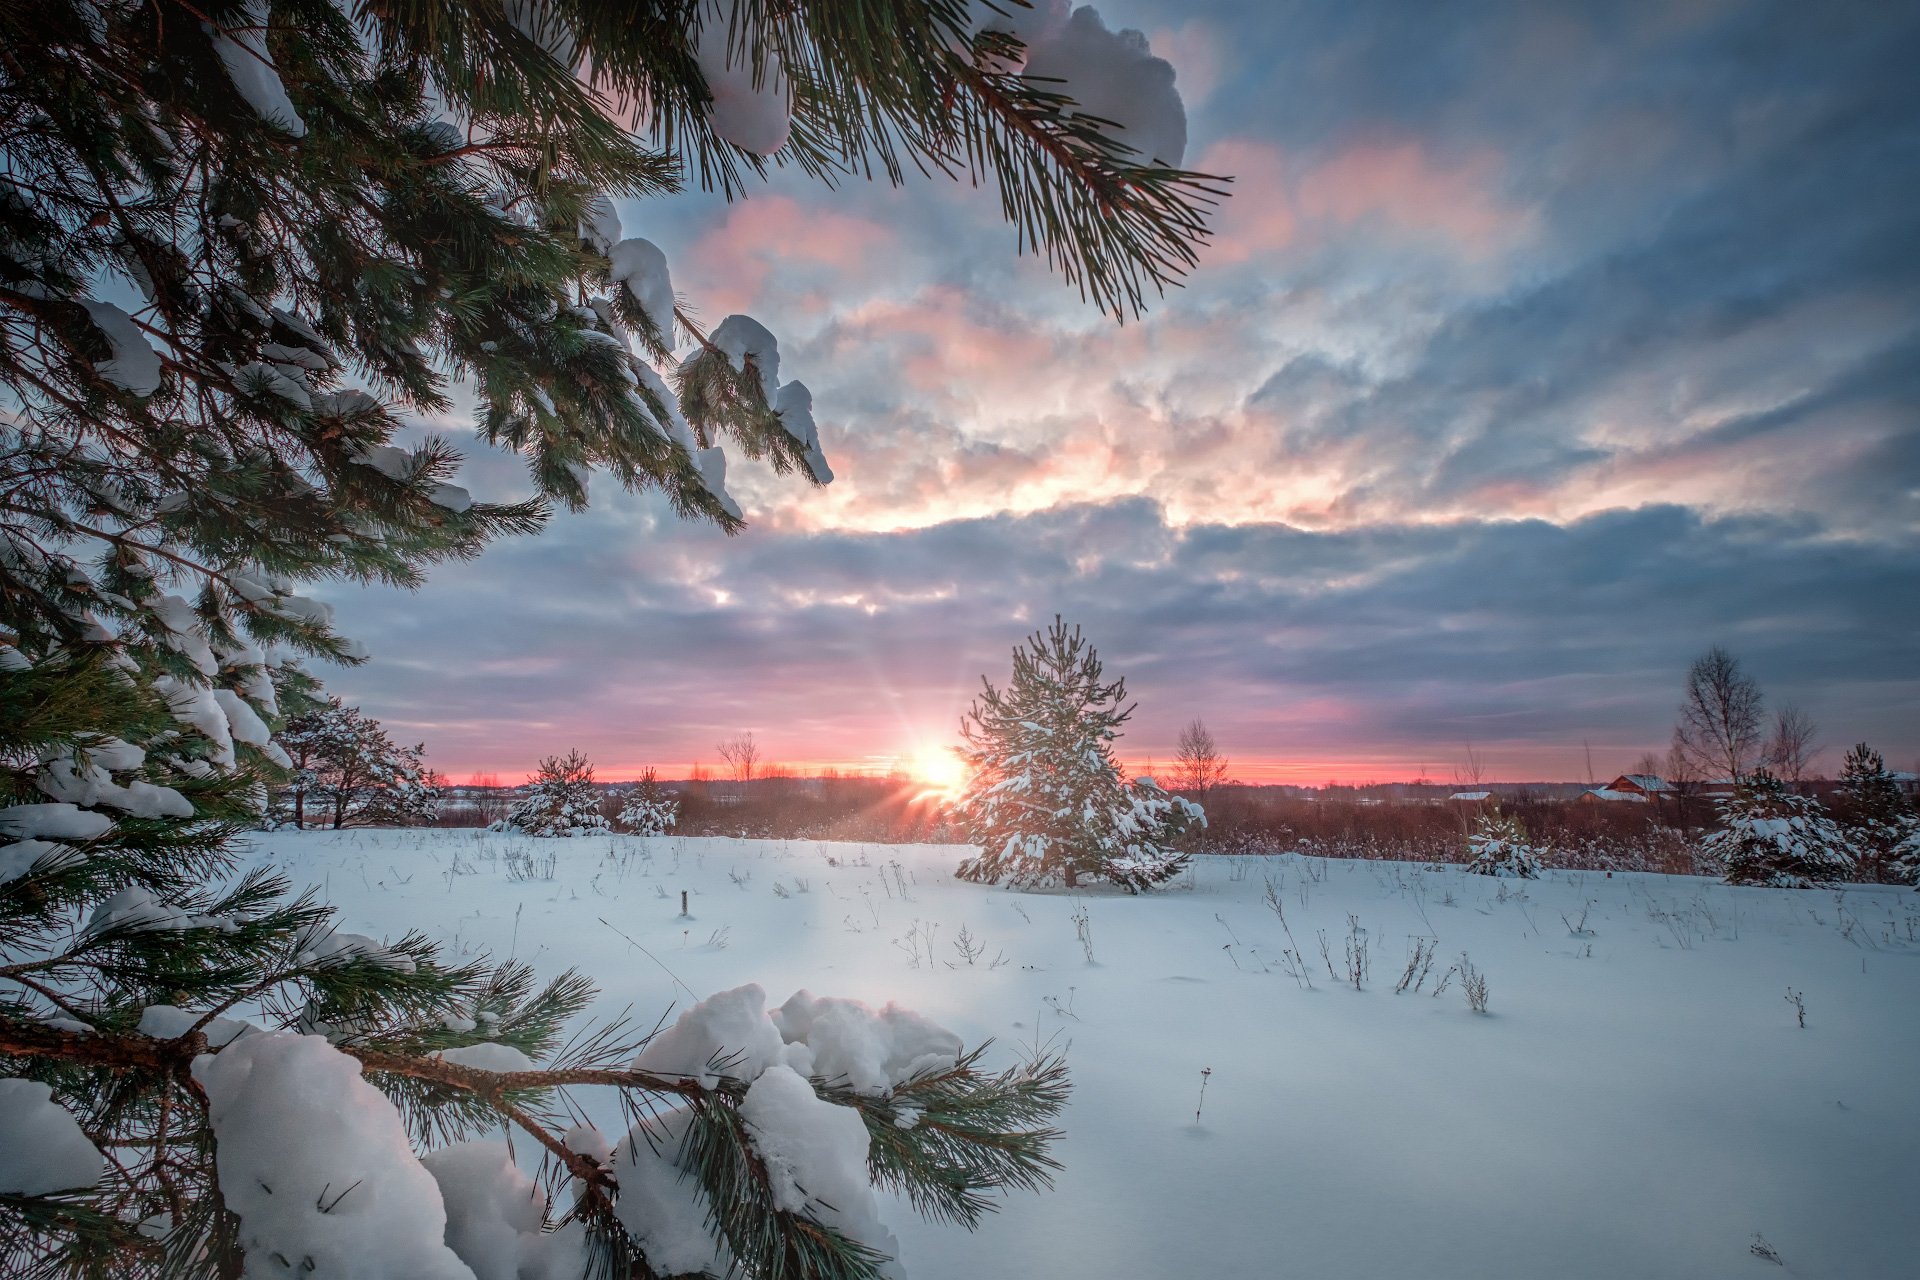 пейзаж, зима, лес, снег, солнце, деревья, ветки, свет, волга, дубна, утро, холод, мороз, Андрей Чиж